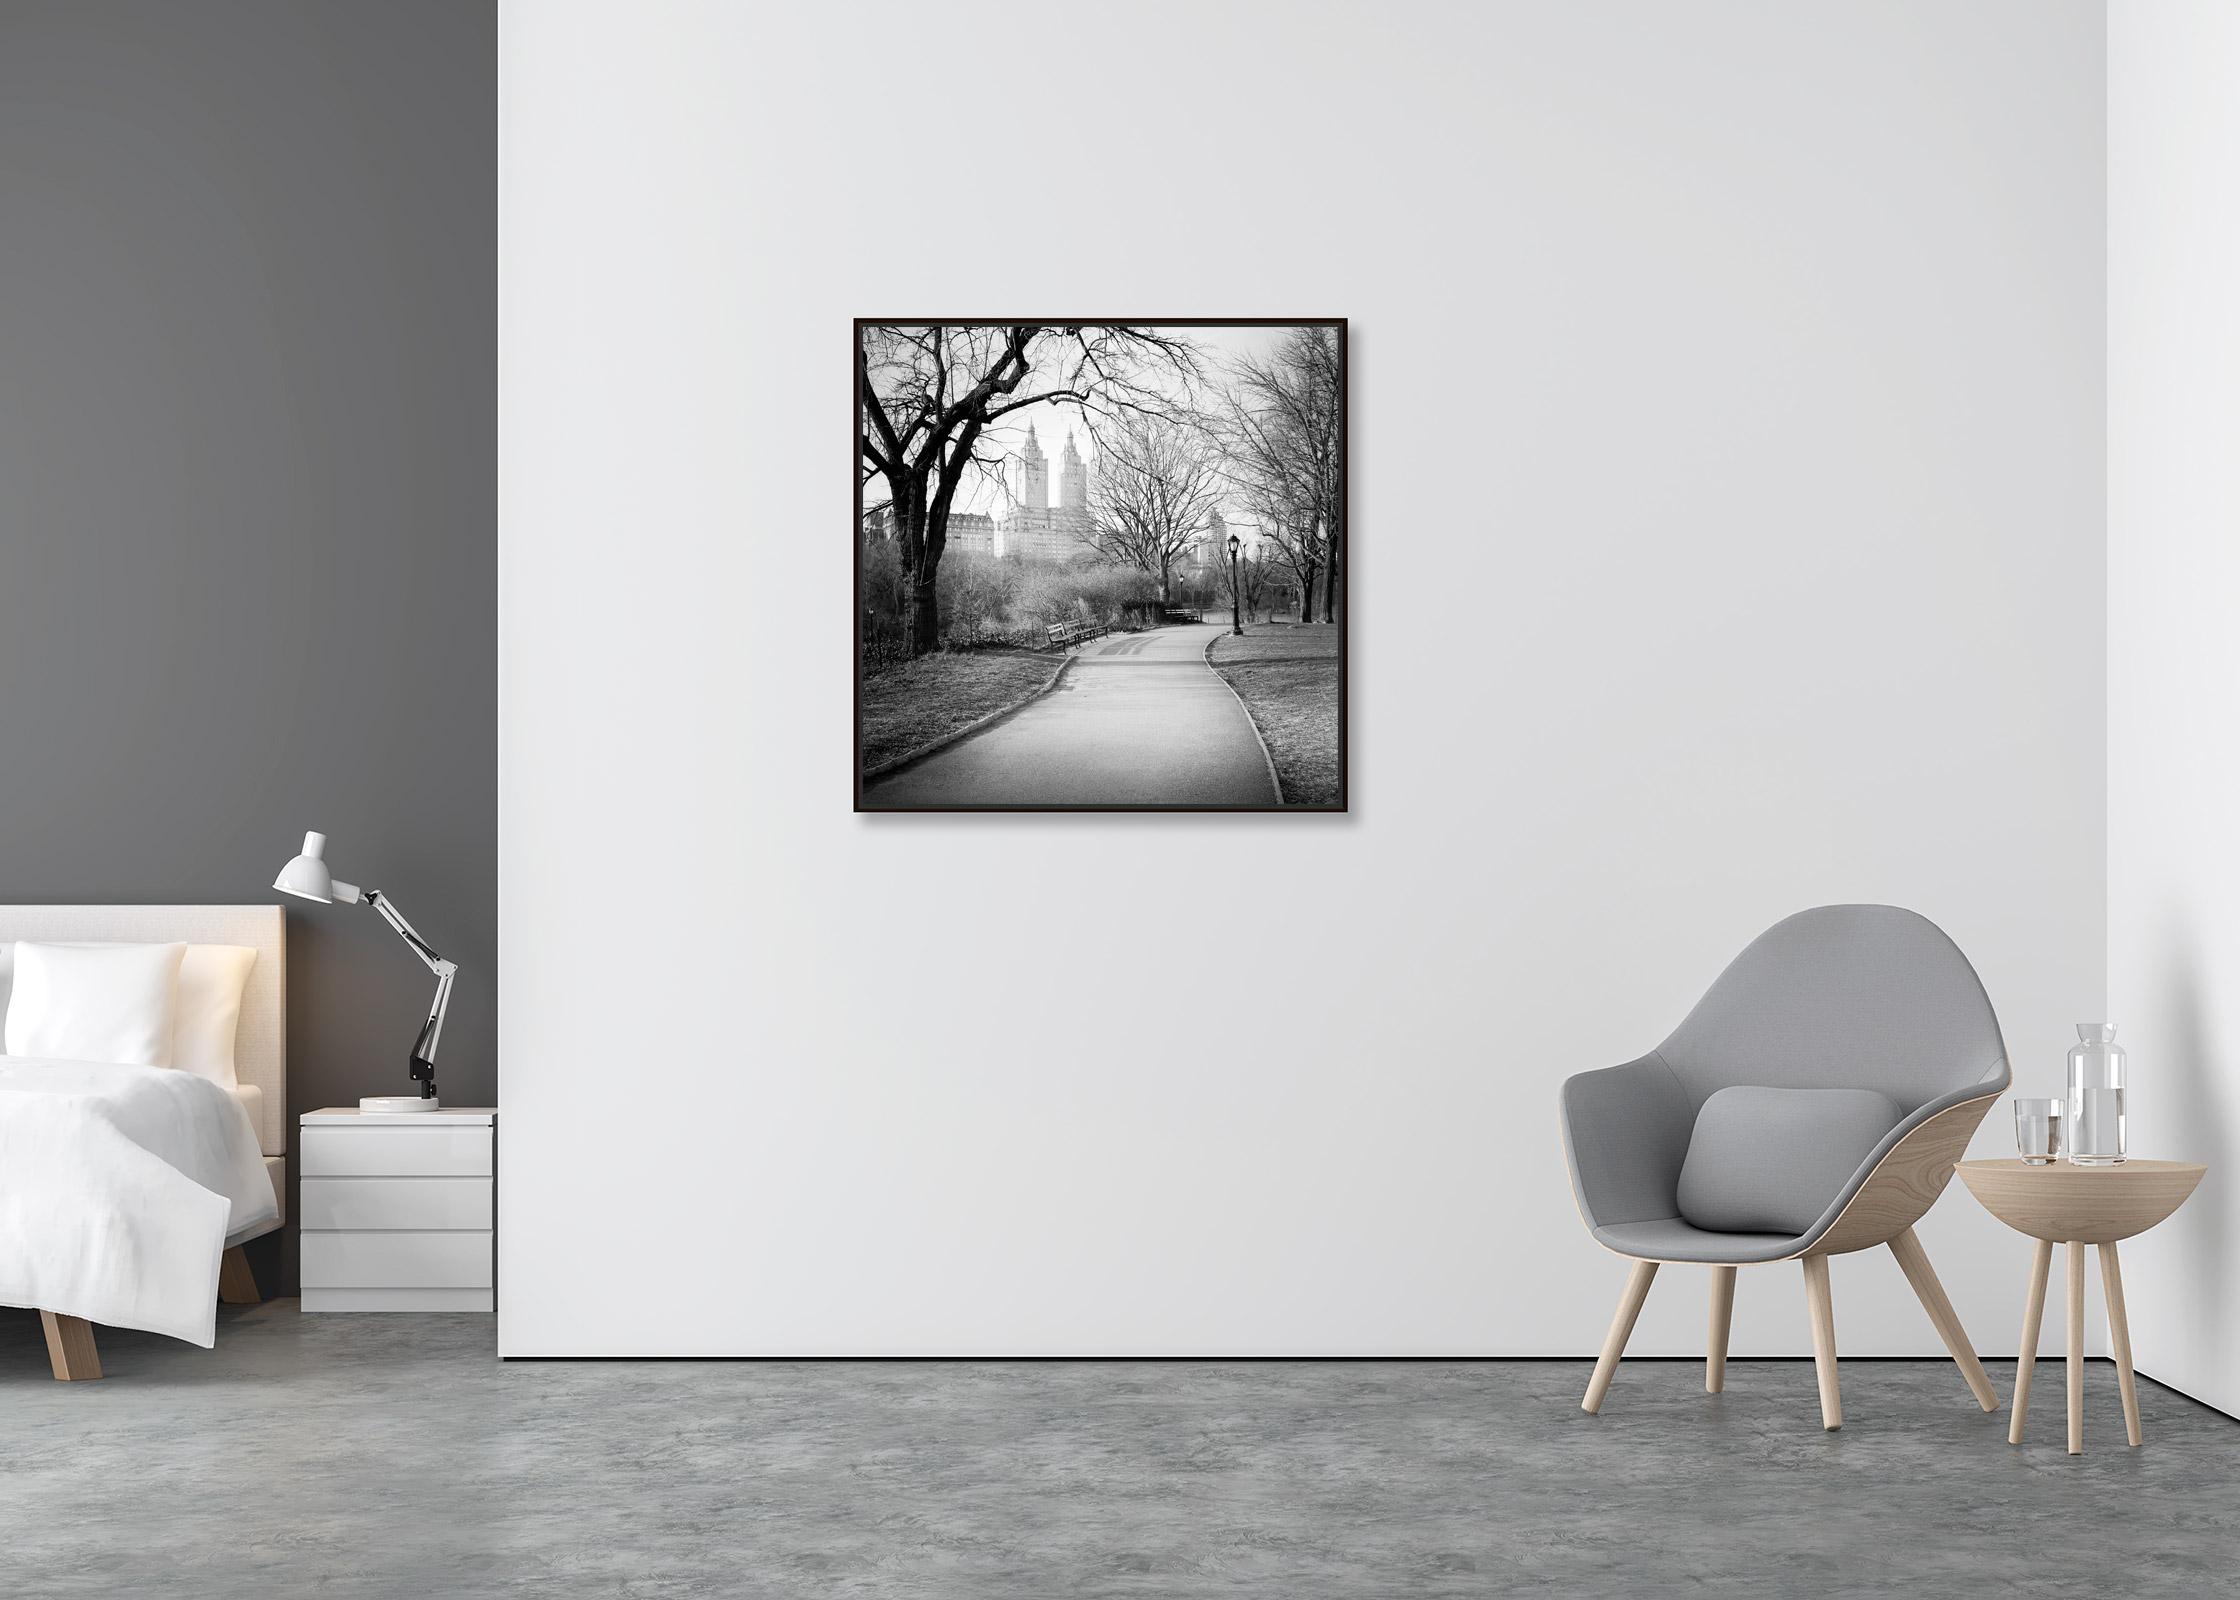 Das San Remo, Central Park, New York City, Schwarz-Weiß-Stadtbildfotografie (Zeitgenössisch), Photograph, von Gerald Berghammer